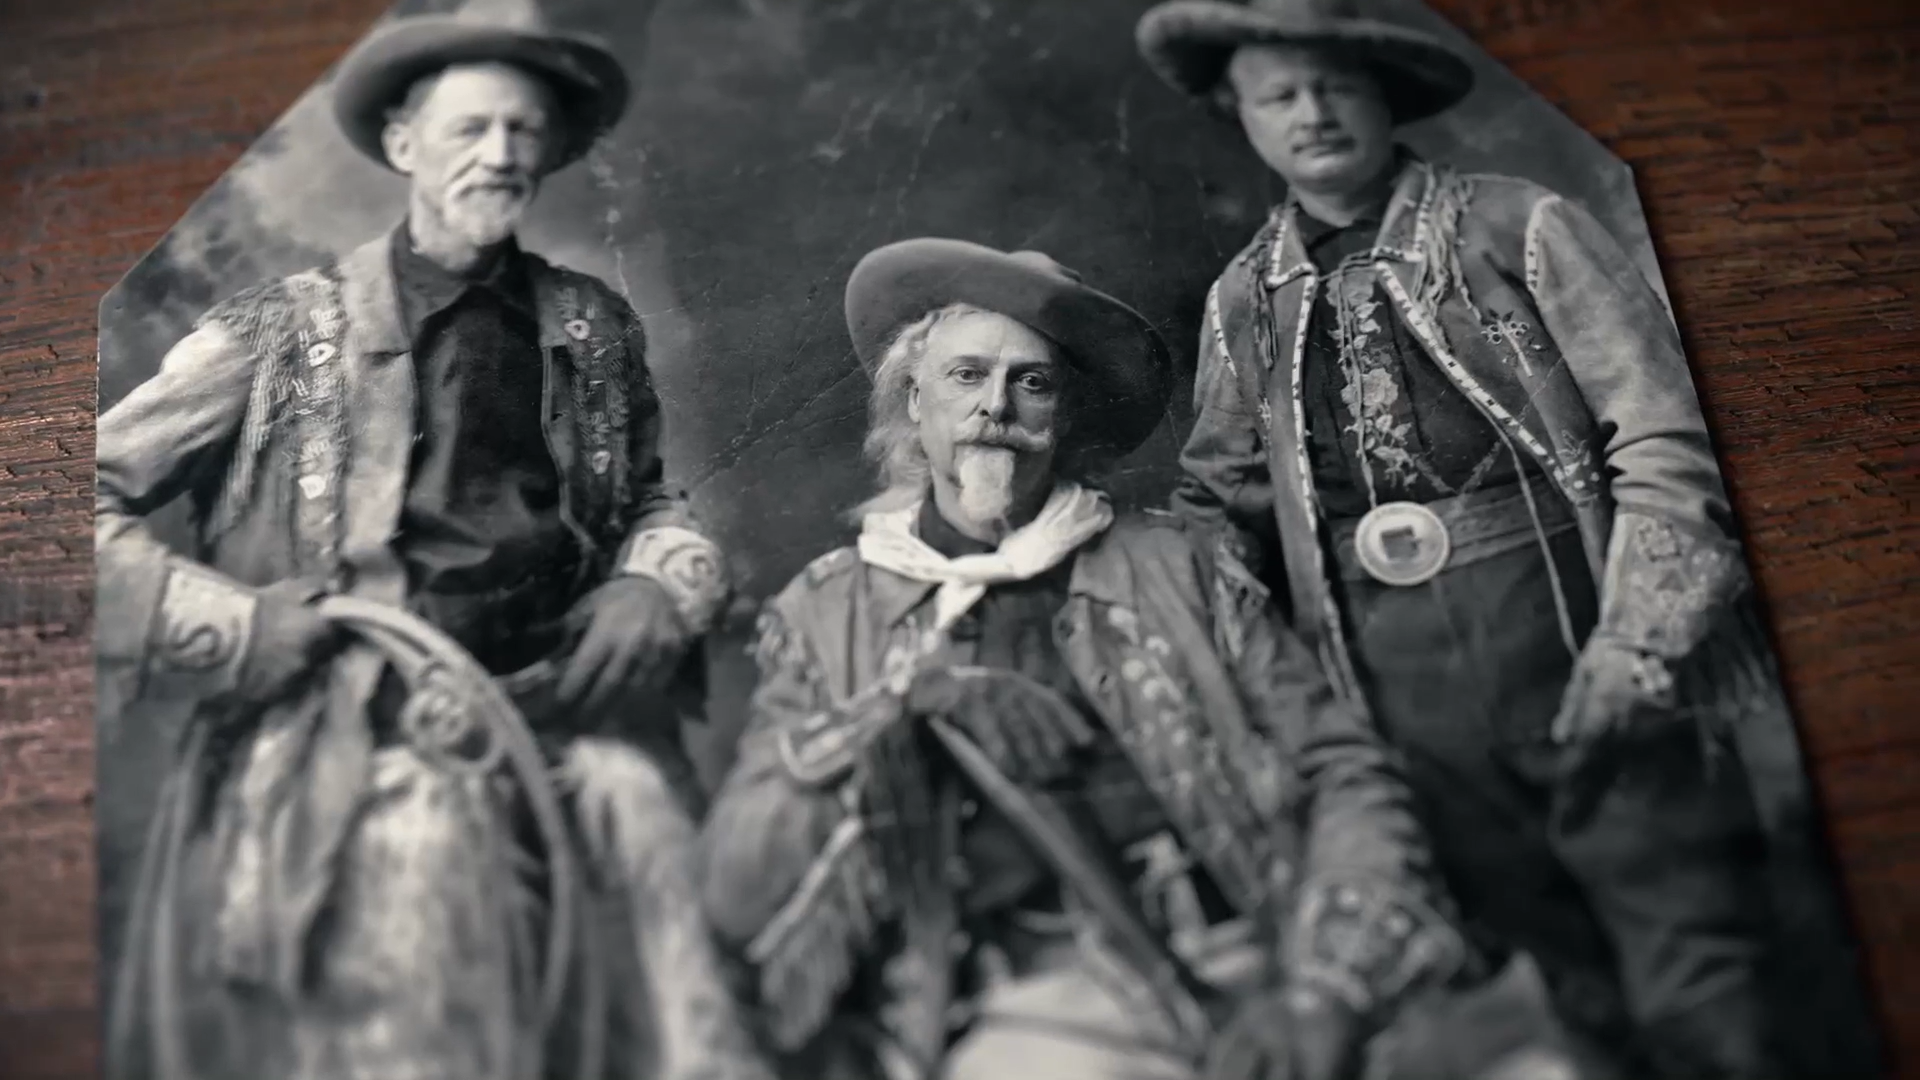 Buffalo Bill Helps Spread the Cowboy Mystique